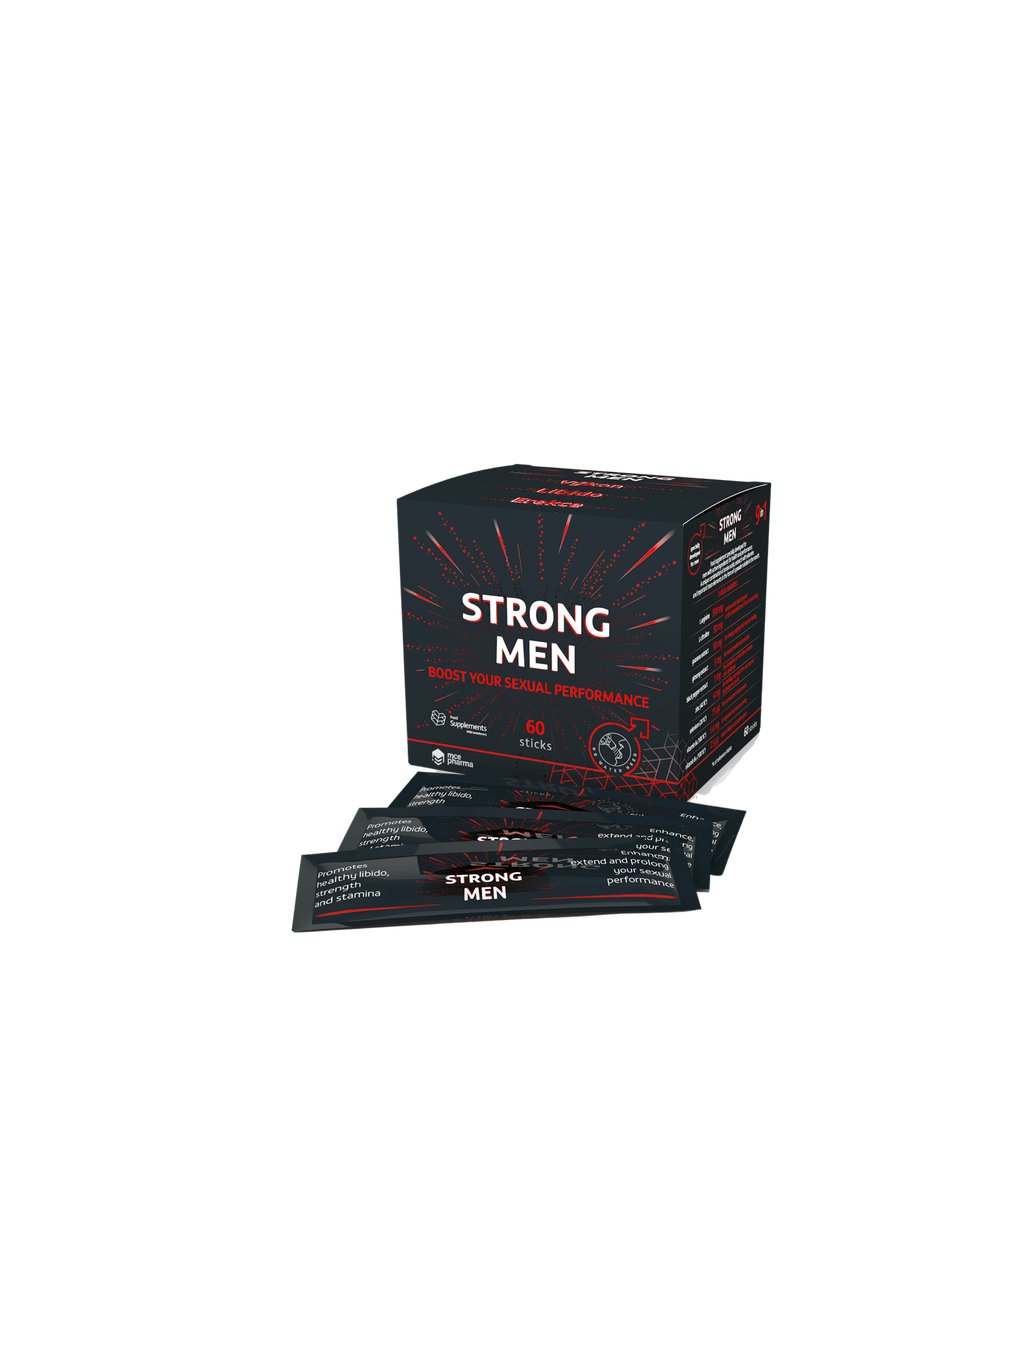 Strong Men – für männliche Leistungsfähigkeit und Gesundheit  Unterstützt eine gesunde Libido, Kraft und Ausdauer.